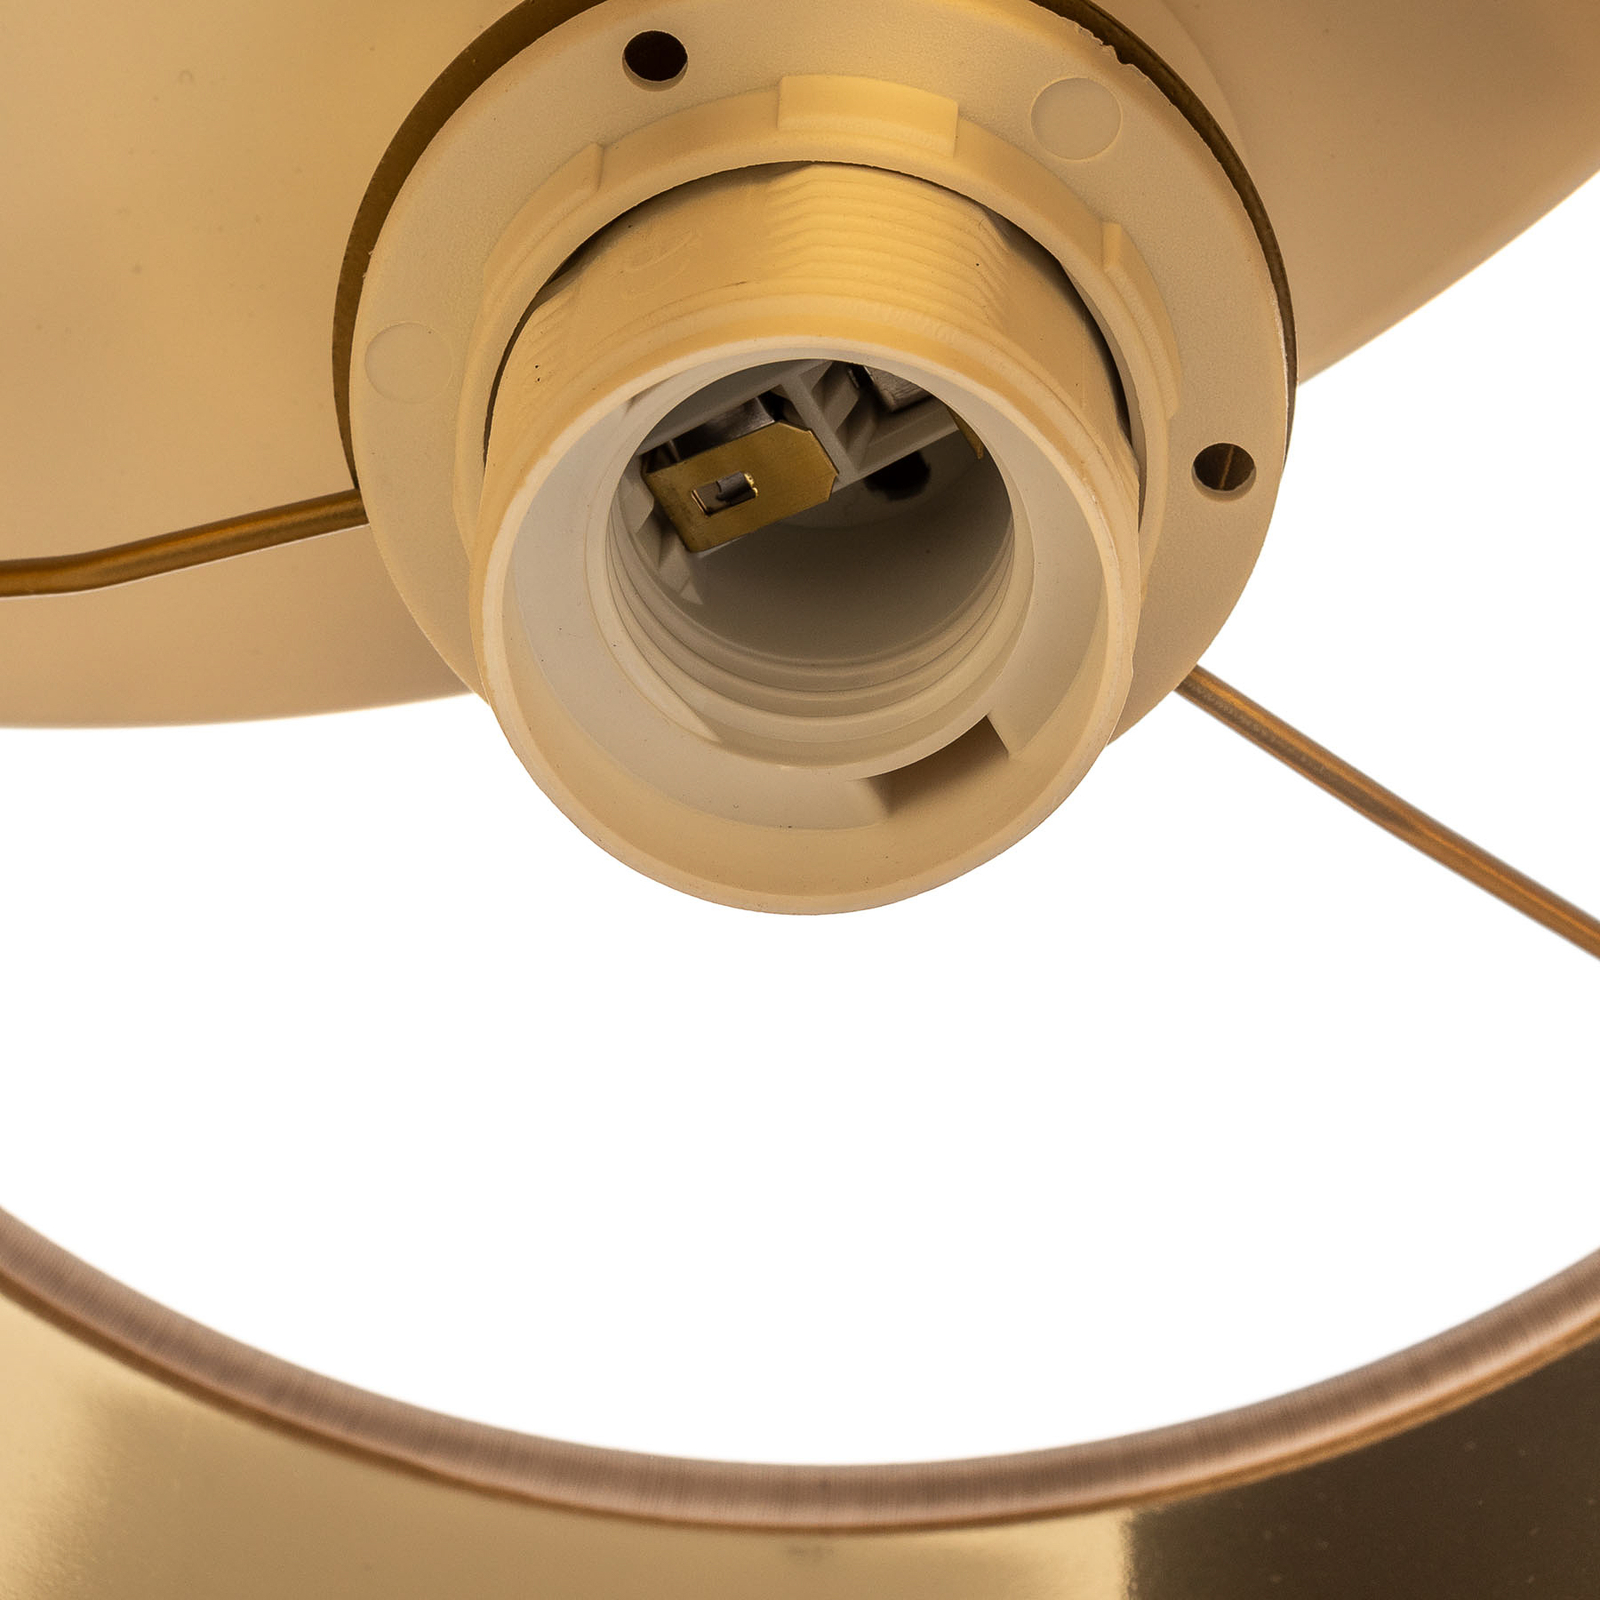 Lampa sufitowa Soho, cylindryczna, 3-punktowa, biały/złoty